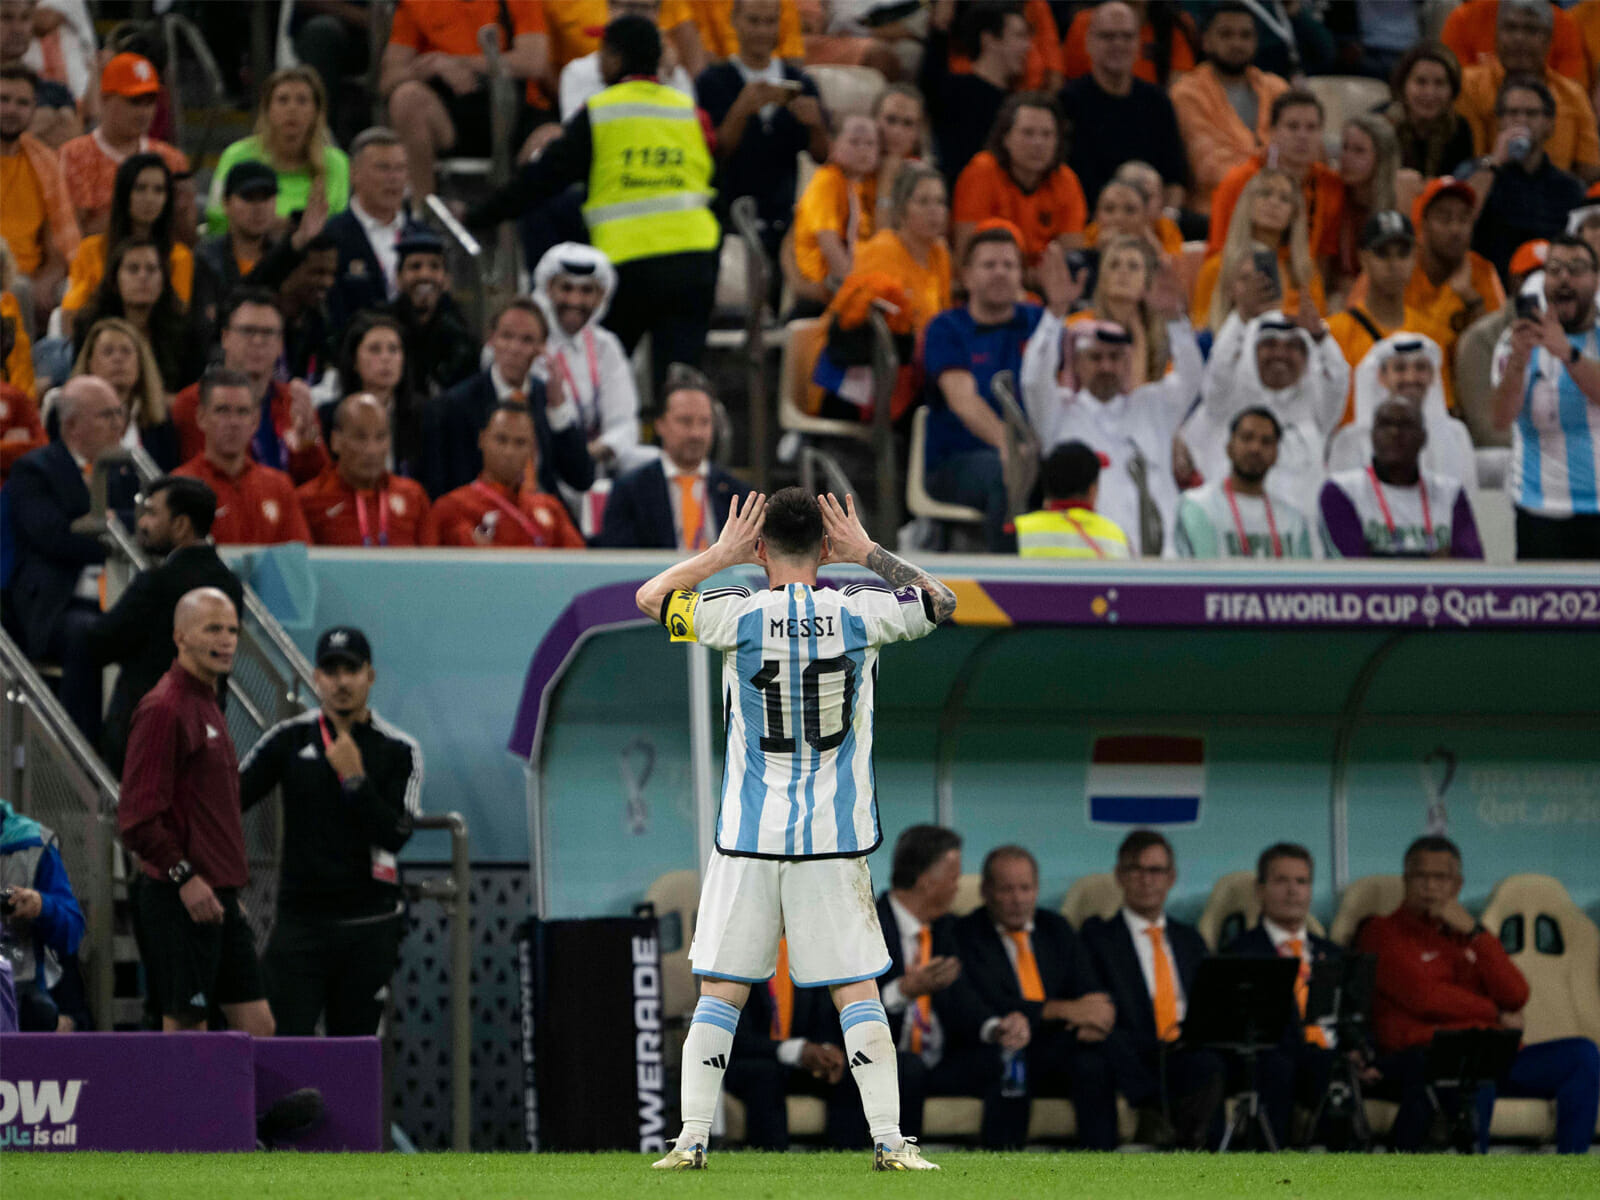 ميسي مُهدد بعقوبة الإيقاف بسبب فعلته في مباراة الأرجنتين وهولندا watanserb.com